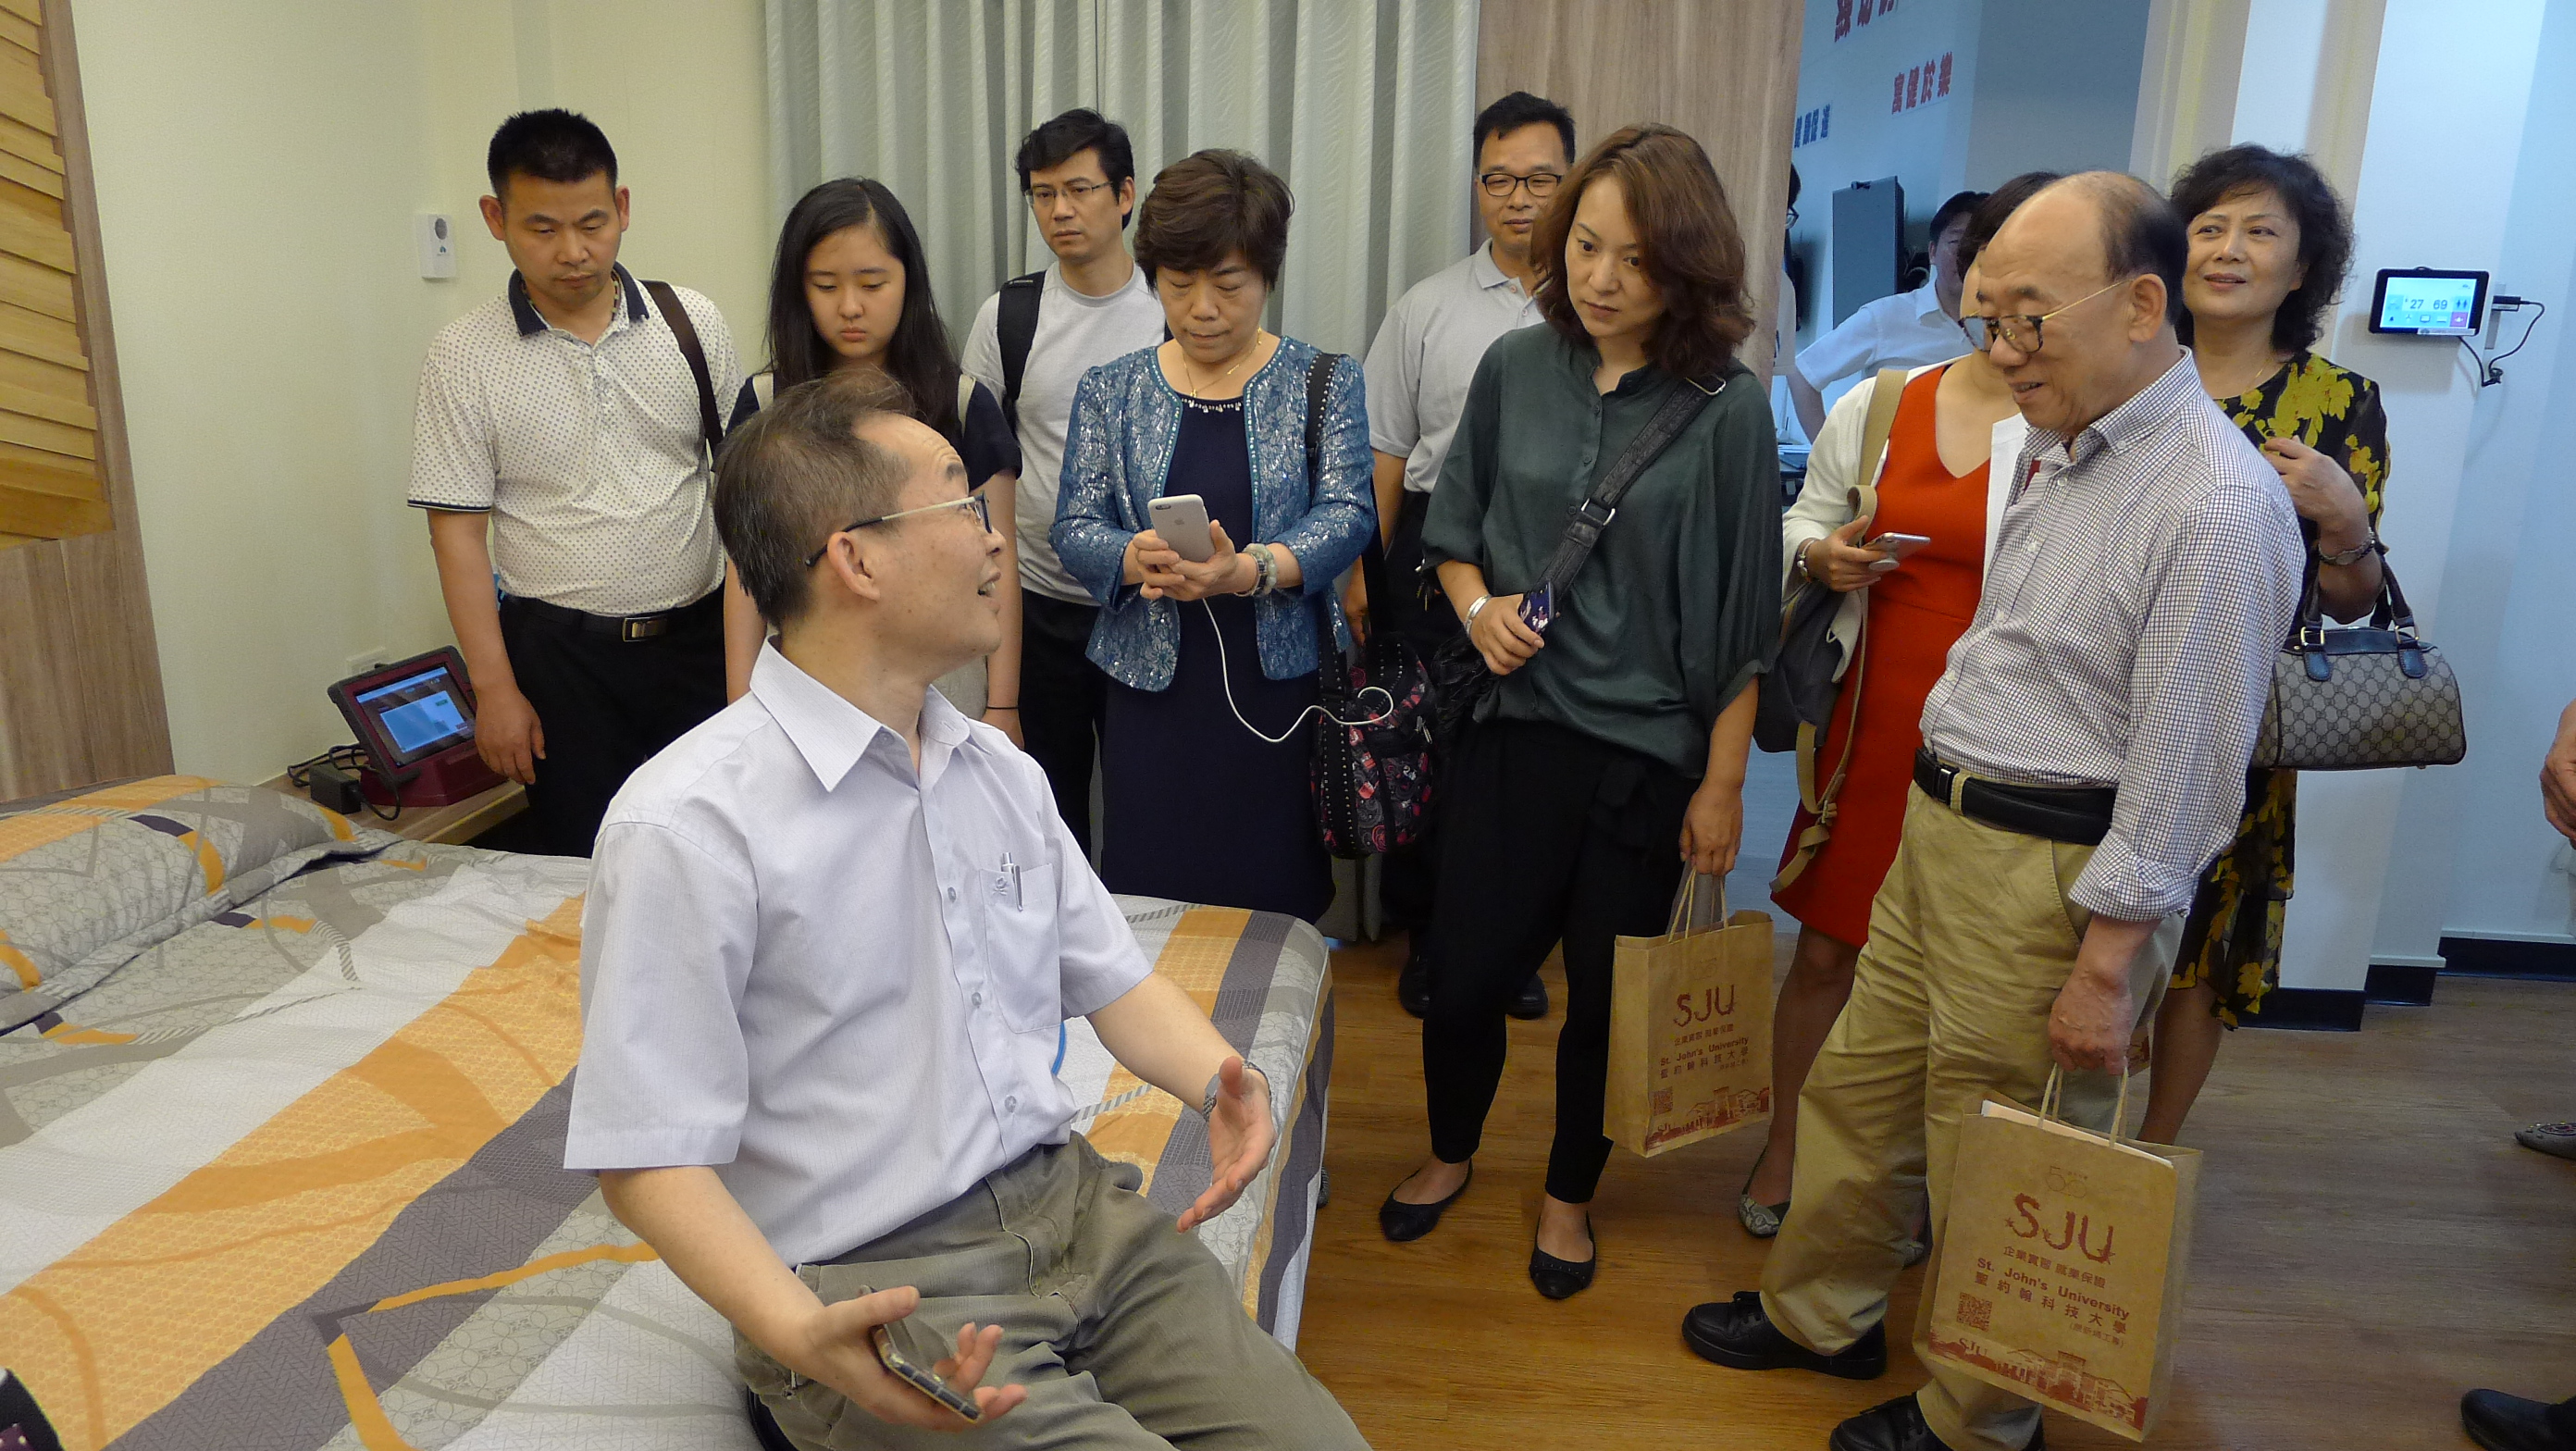 上海養老專委會一行人對老人生活模擬教室所使用的移位板設備覺得新鮮與好奇，紛紛實地體驗利用輔具移位的技巧